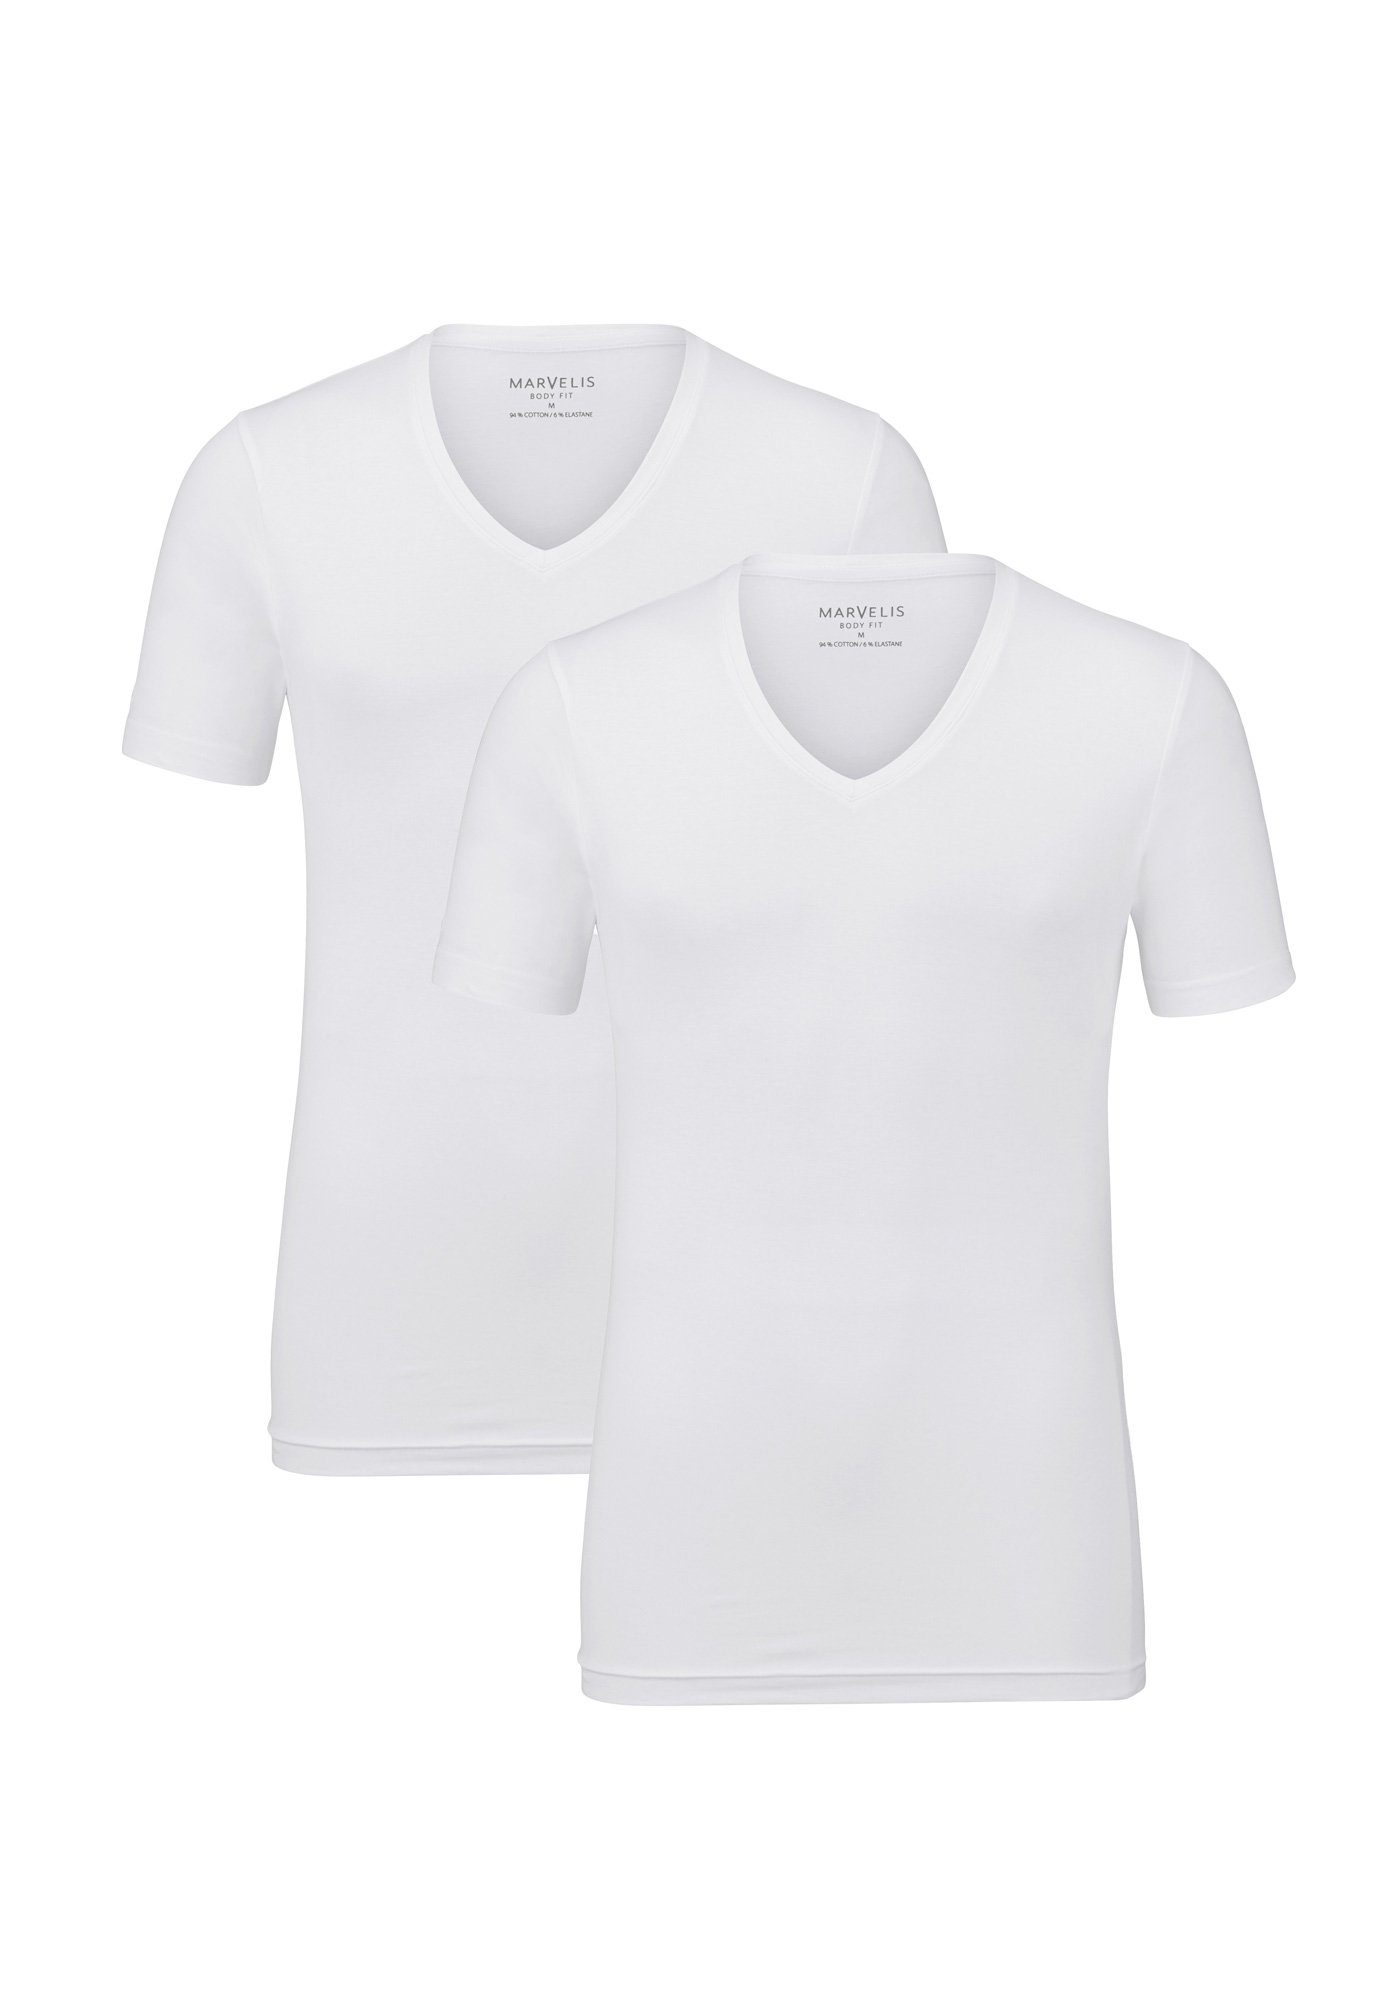 MARVELIS V-Shirt T-Shirt Doppelpack - Body zum V-Ausschnitt - Ideal Unterziehen - Fit weiß (2-tlg)